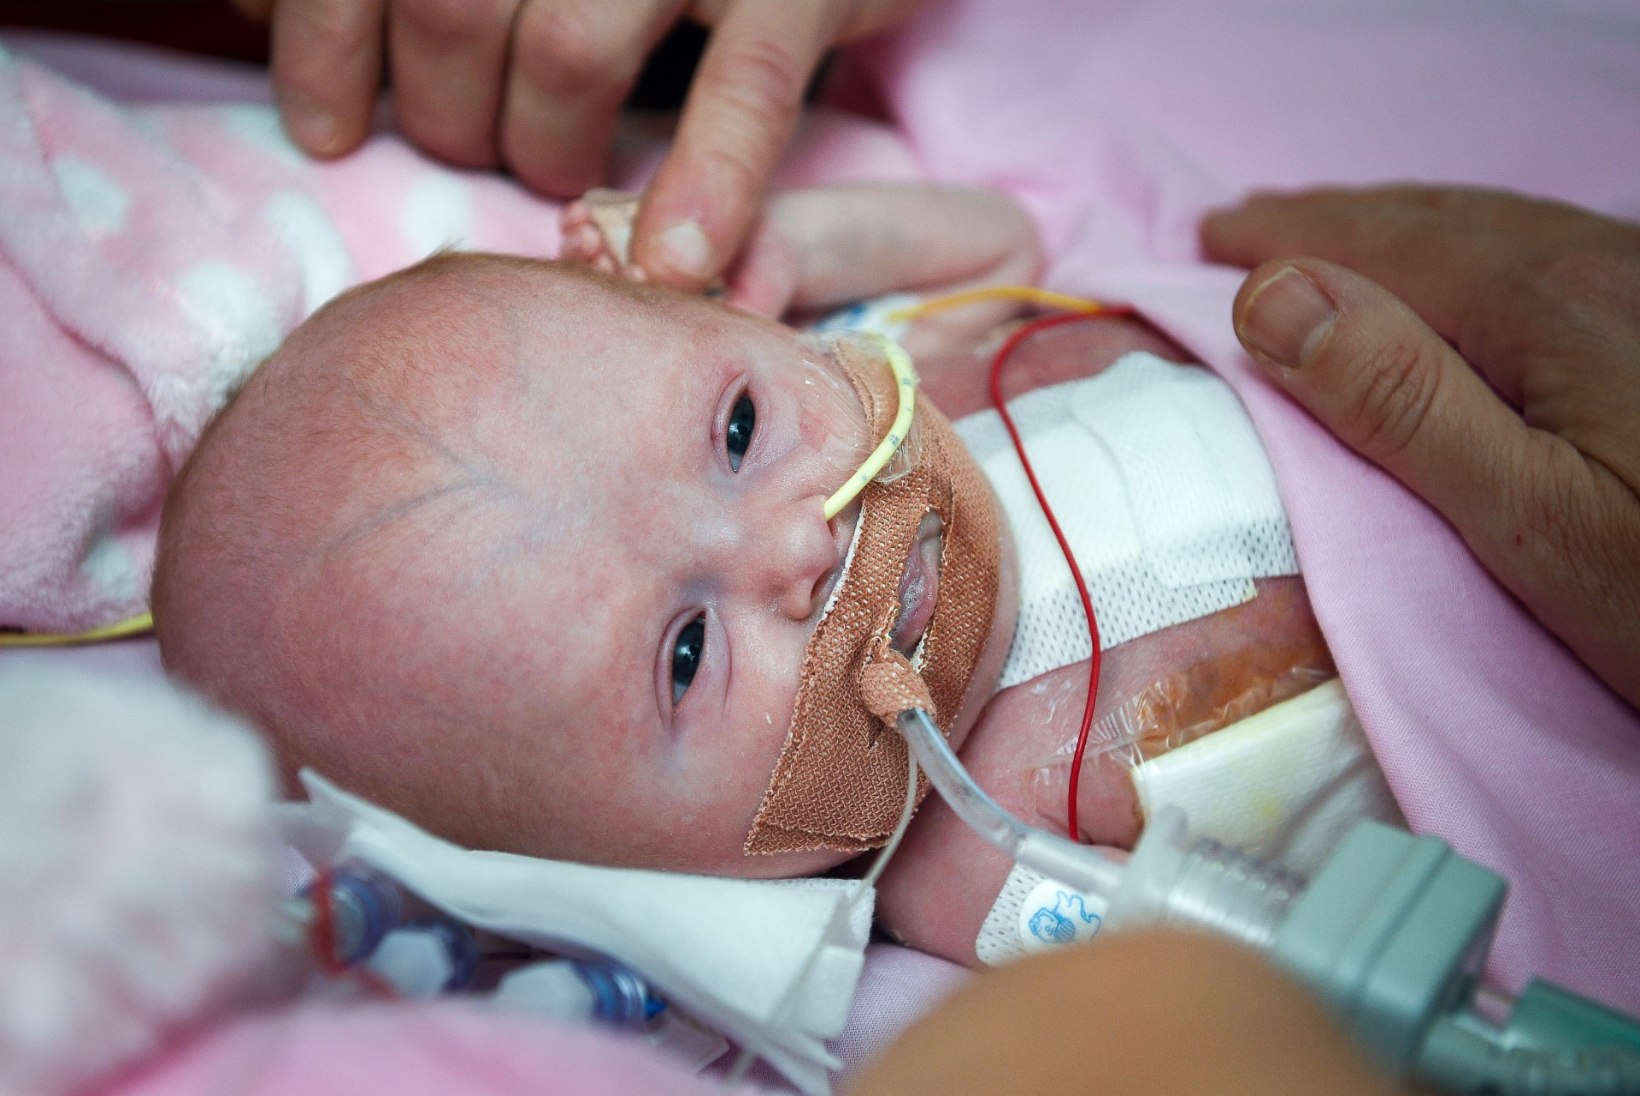 PISIKE VAPPER VÕITLEJA: beebi sündis süda väljaspool keha